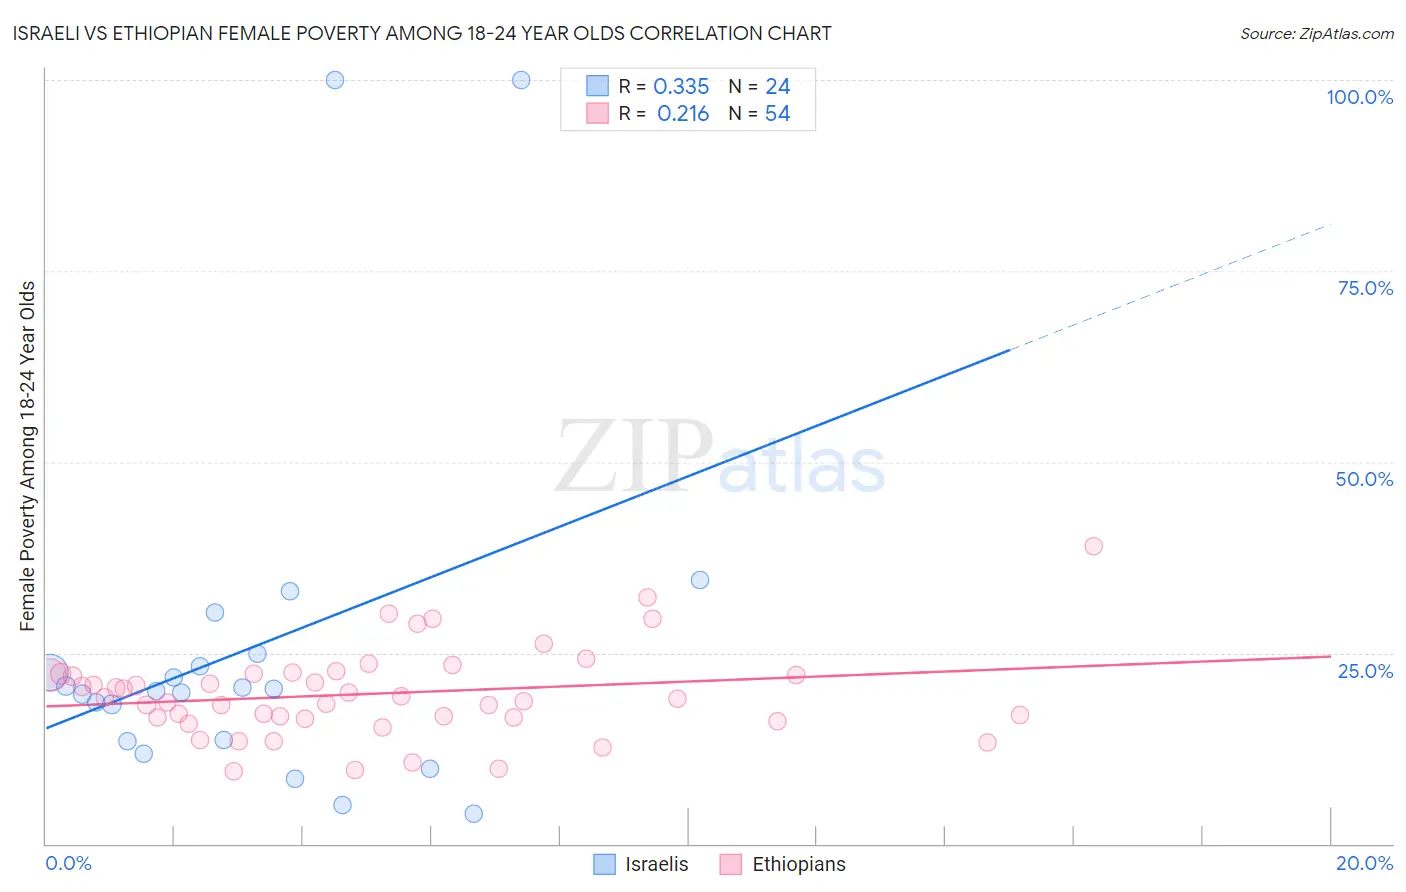 Israeli vs Ethiopian Female Poverty Among 18-24 Year Olds